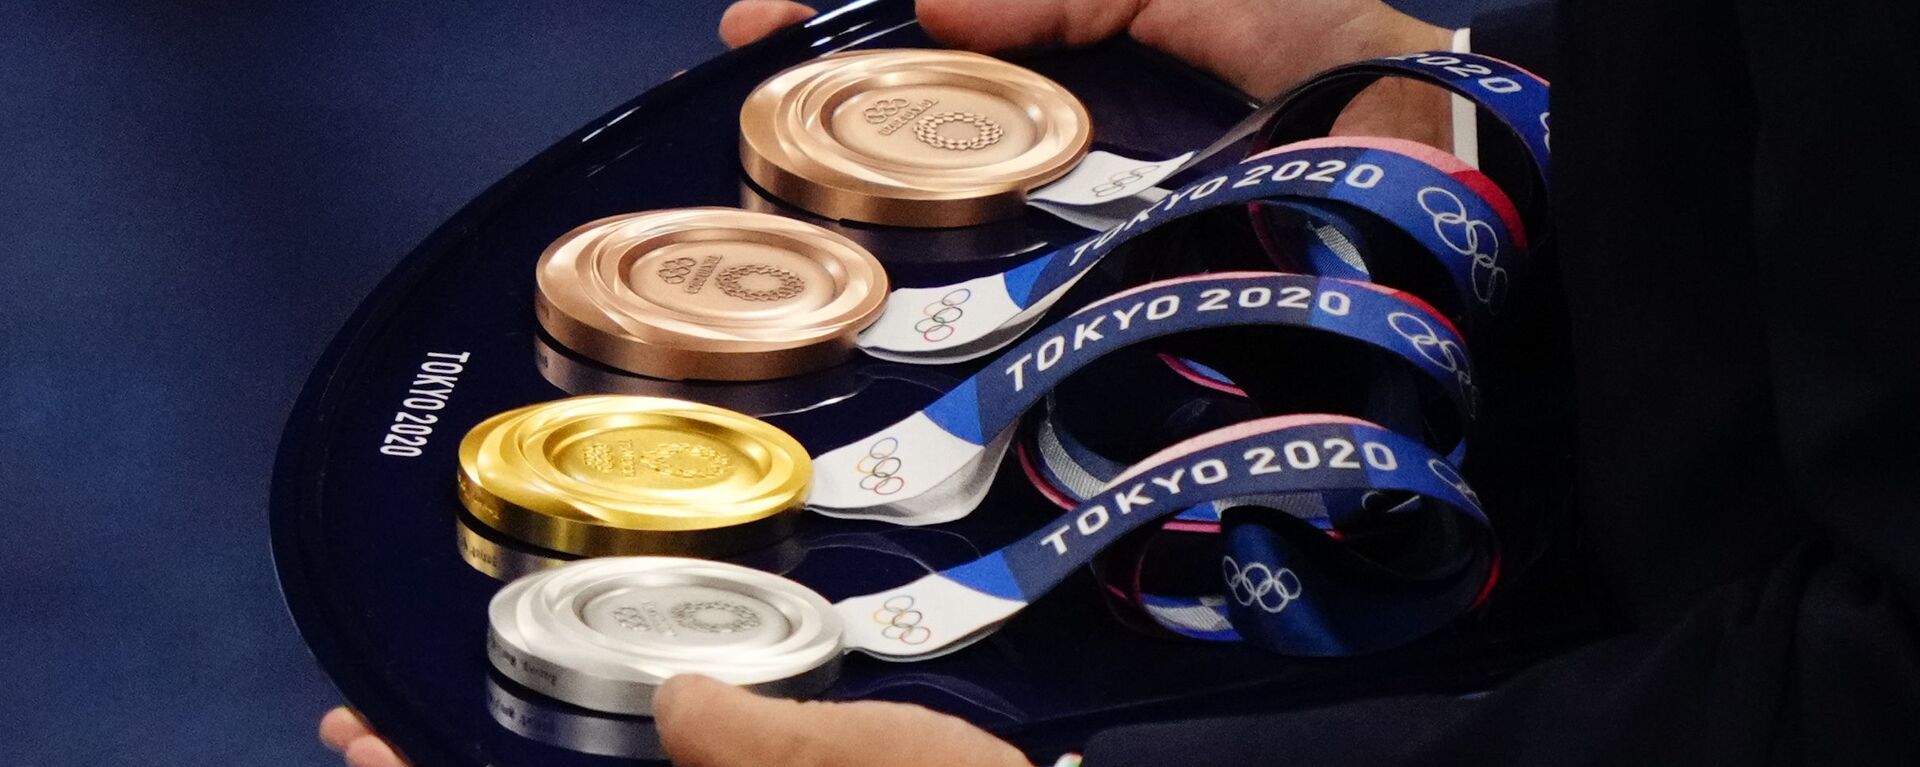 Комплект медалей для награждения призеров соревнований на летних Олимпийских играх в Токио - Sputnik Кыргызстан, 1920, 12.08.2021